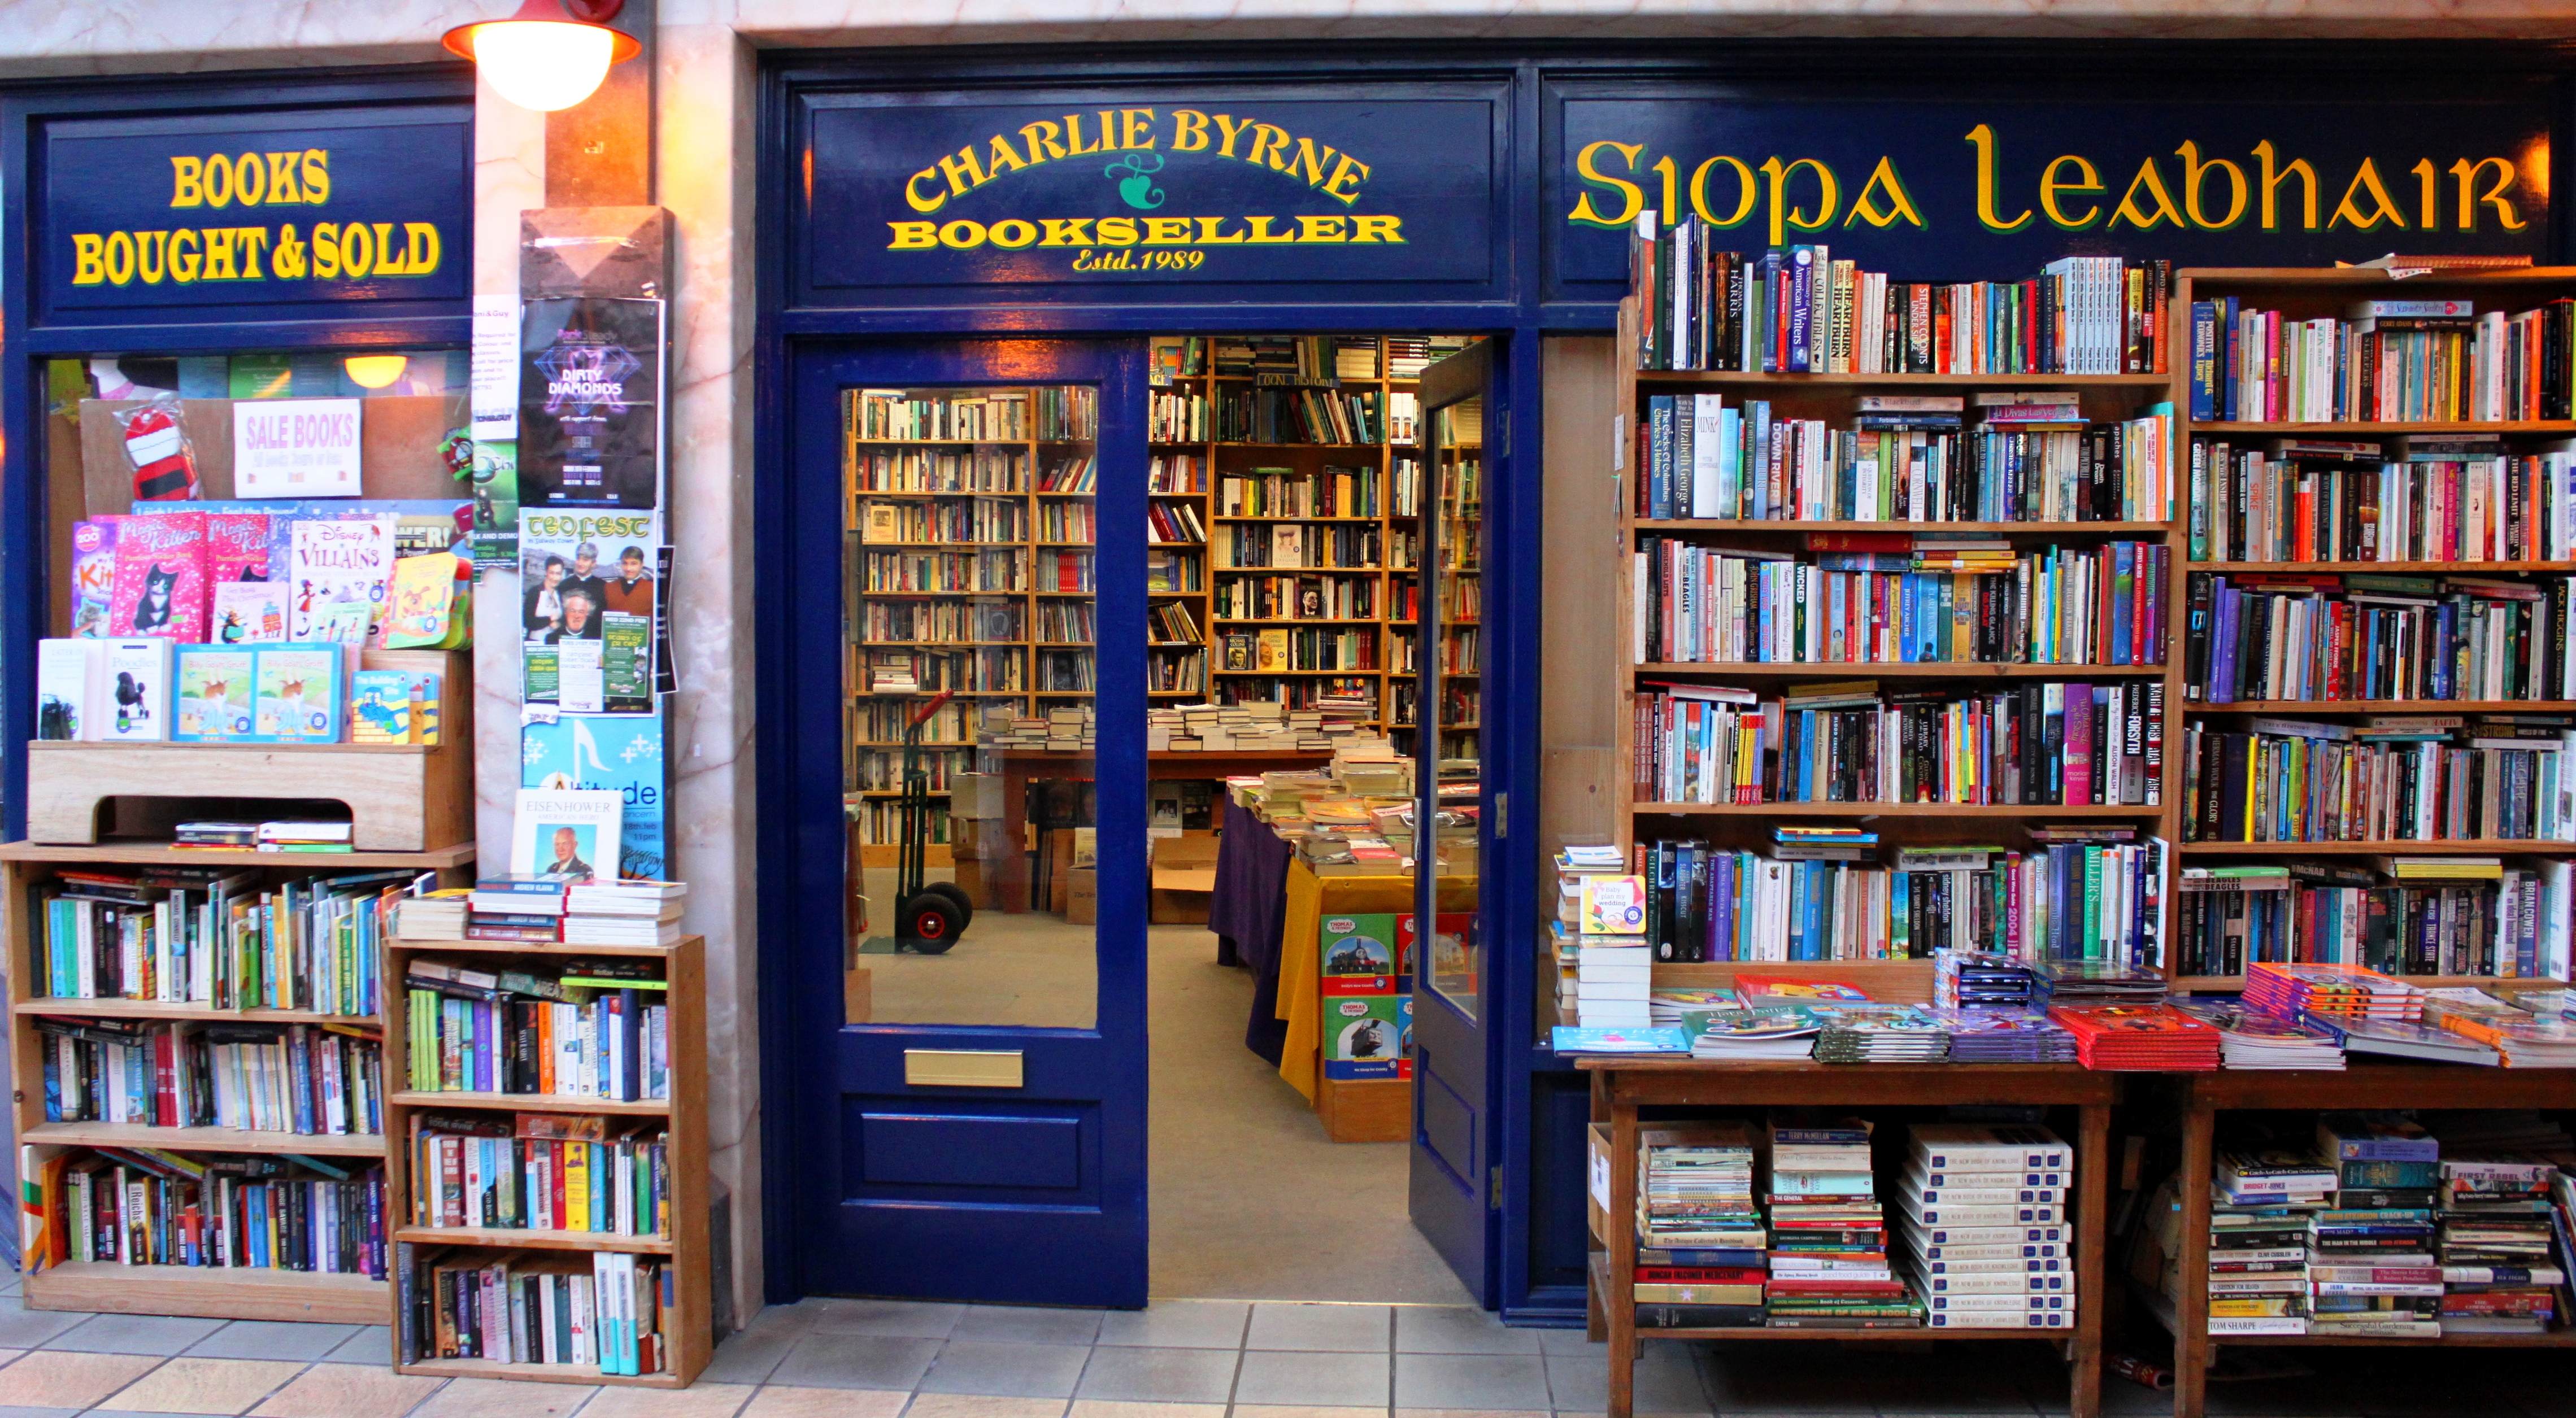 Middle Street Shop : Charlie Byrne's Bookshop, Ireland's best loved ...